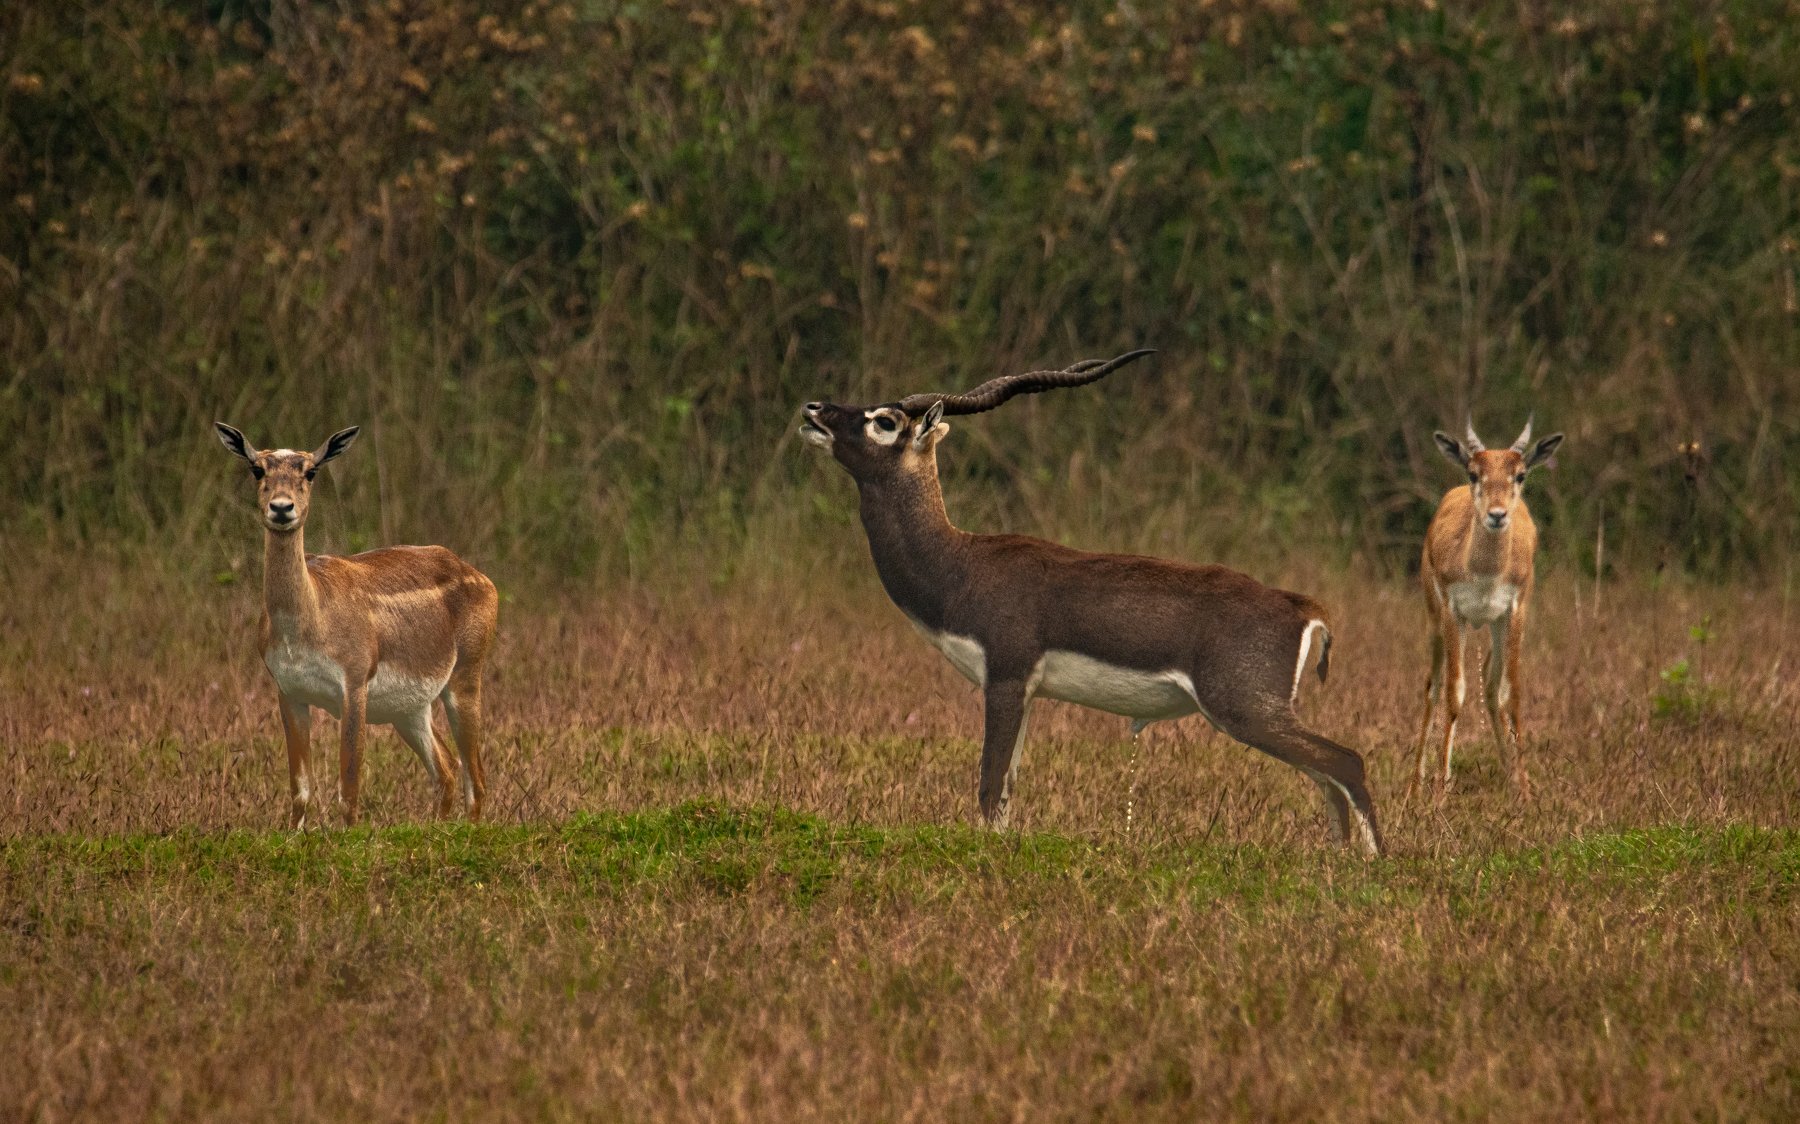 blackBuck deer antlers horns dimorphic sex territorial female male grunting peeing excretion pee, Nabarun Majumdar